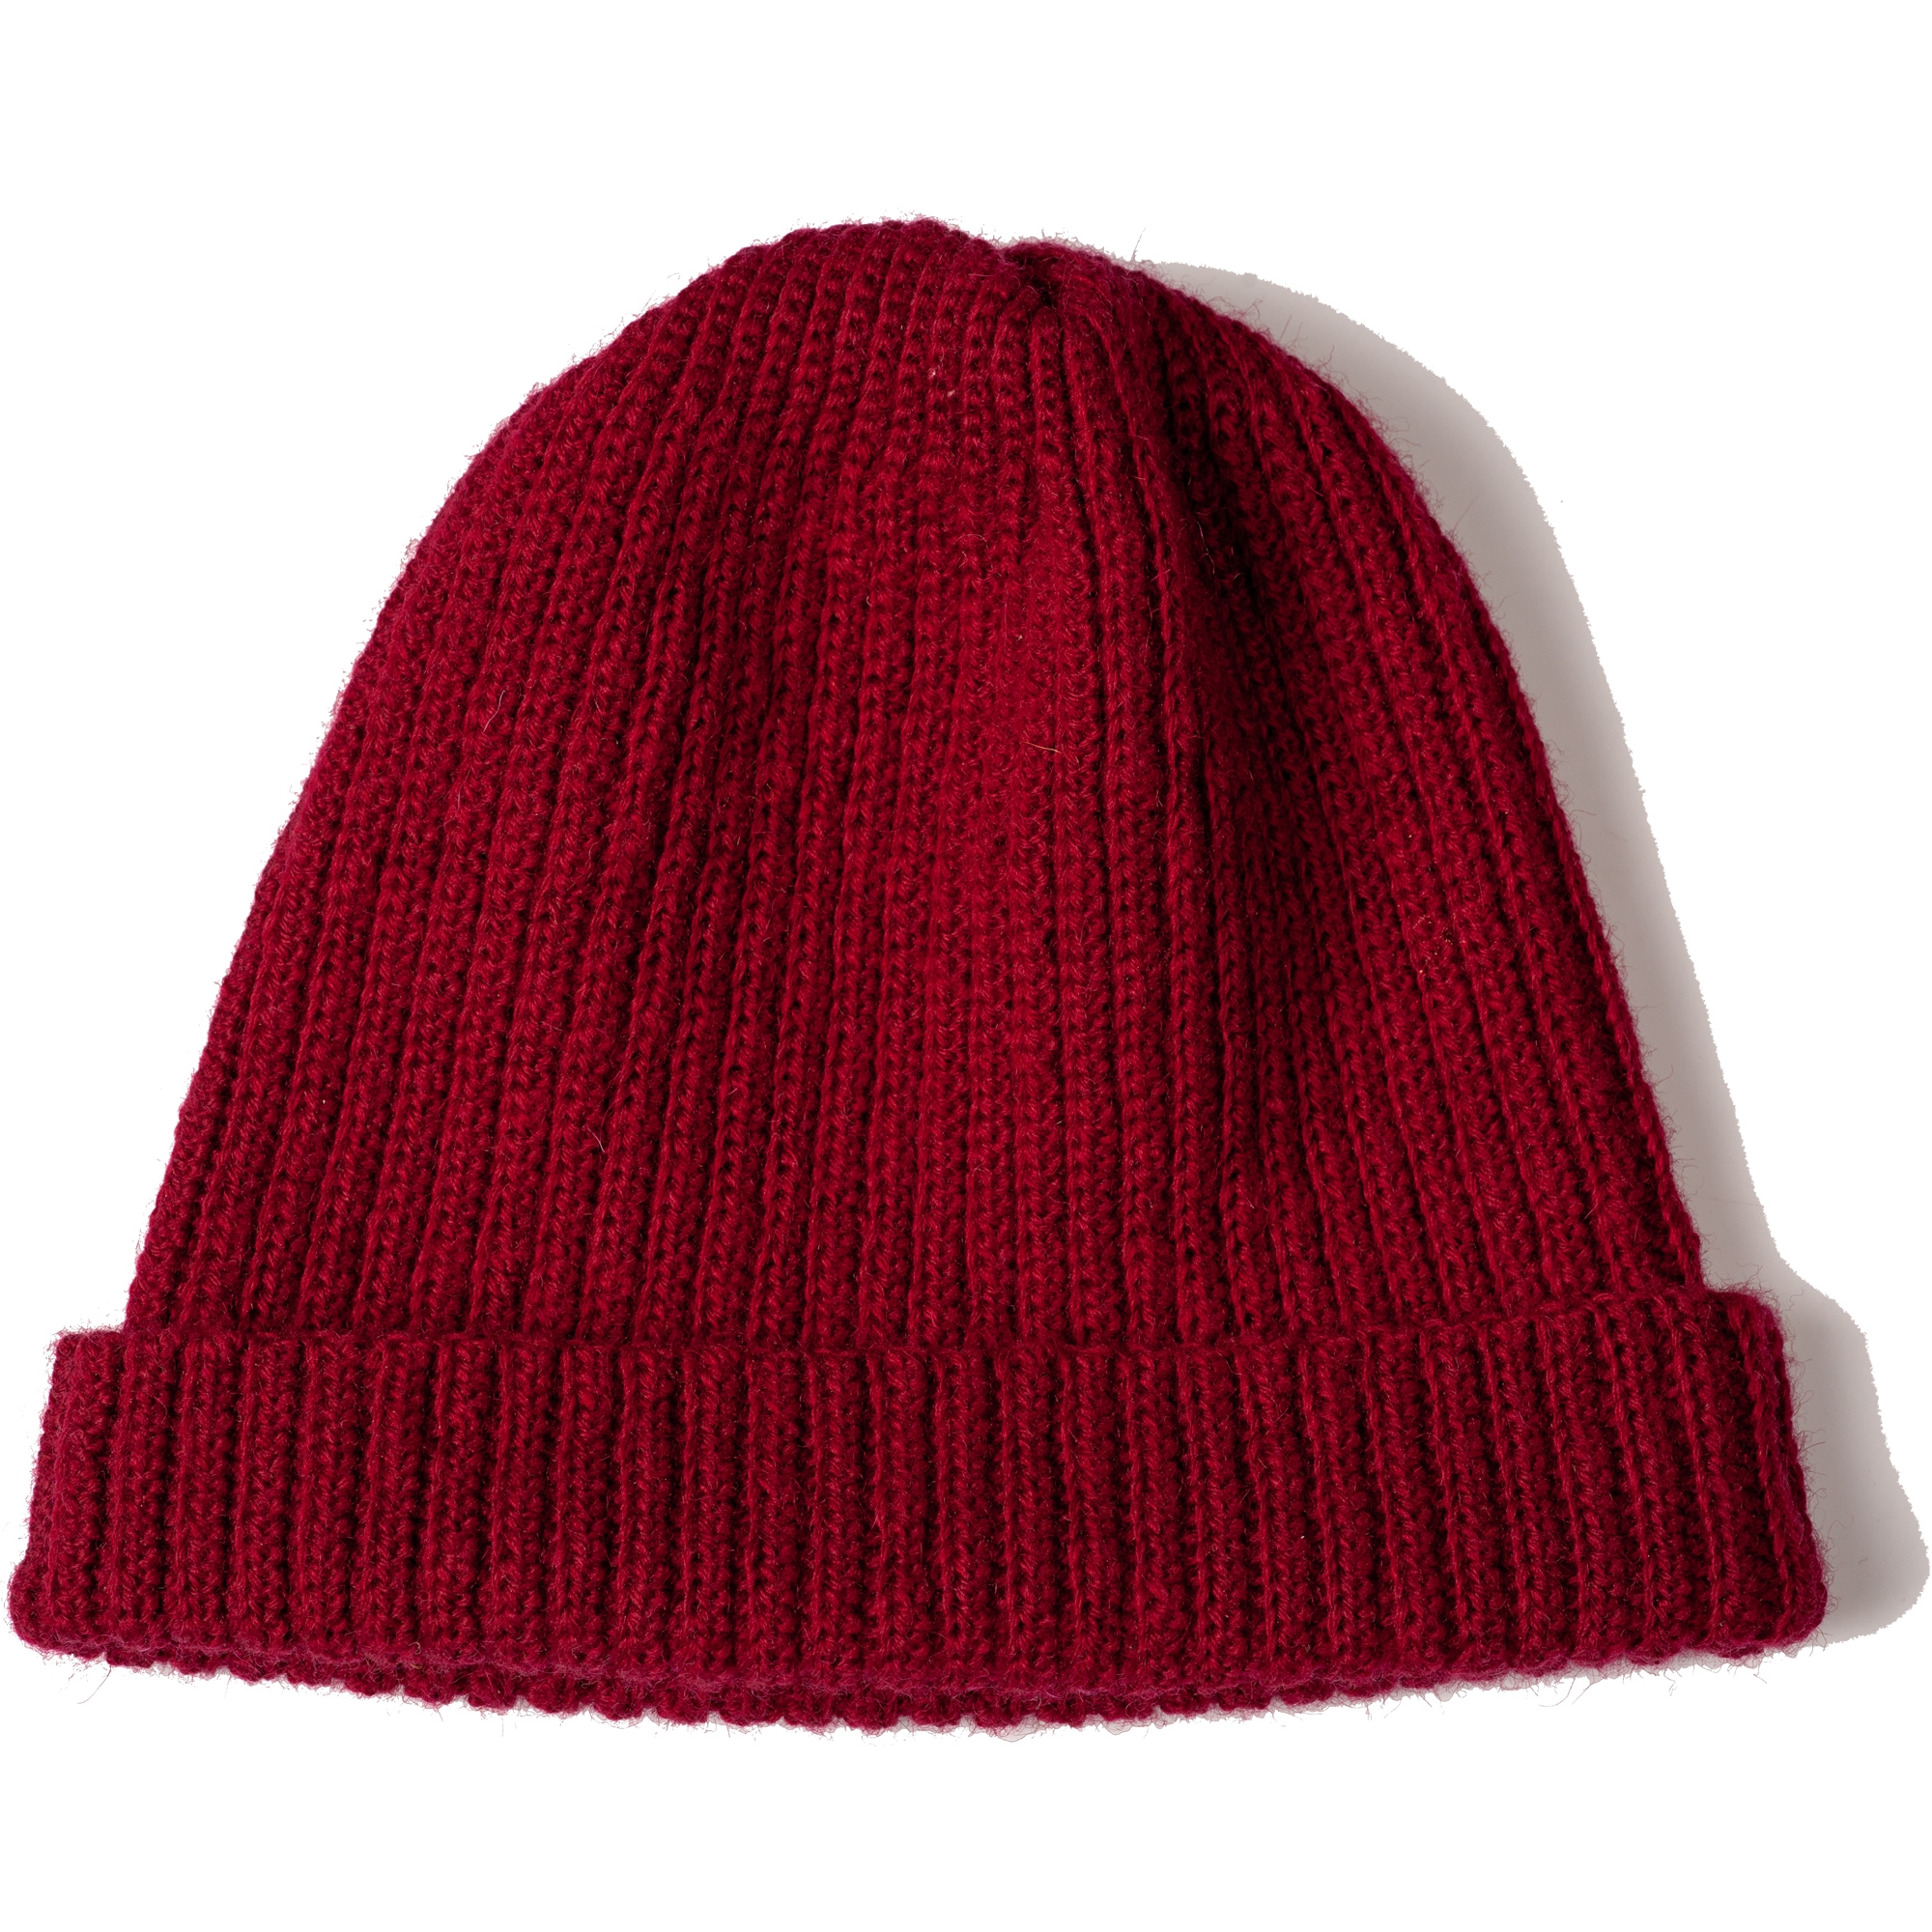 Dark Red Hand Knitted Soft Merino Wool Hat